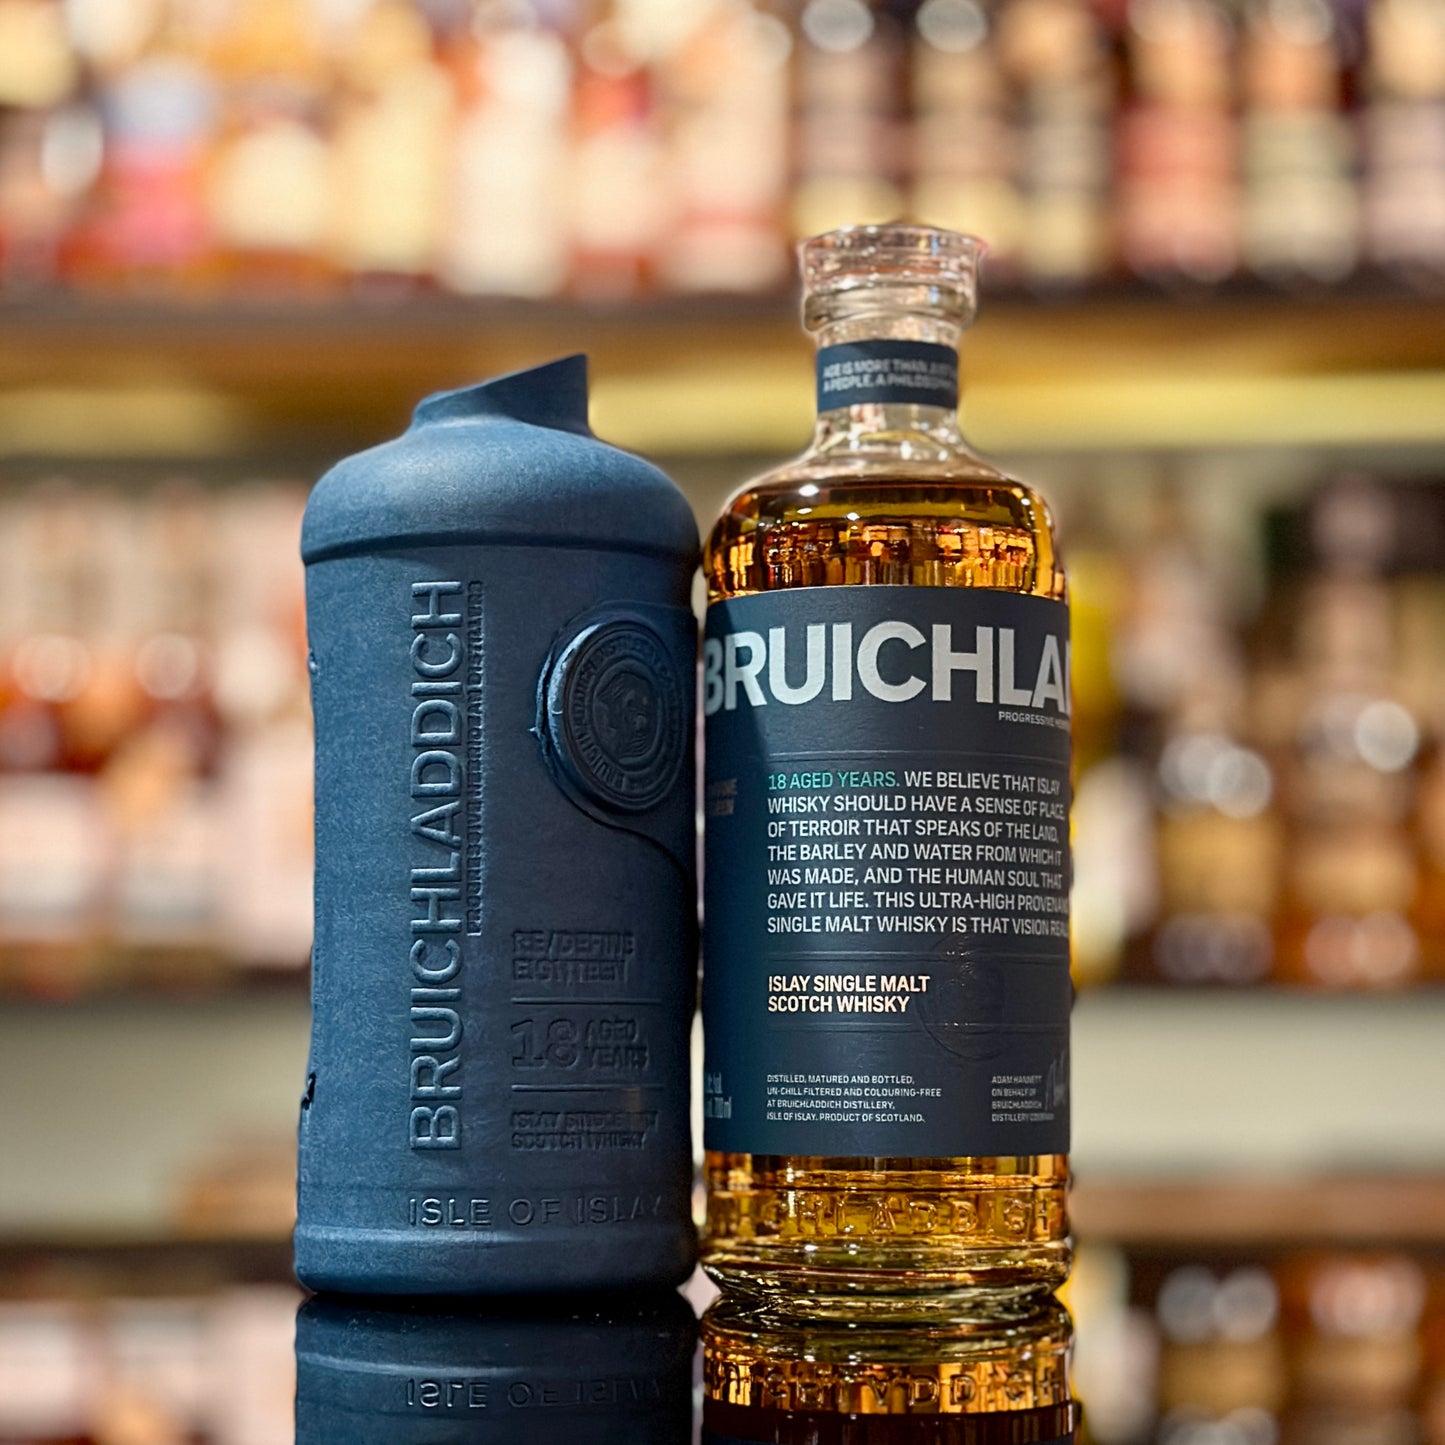 Bruichladdich 18 Year Old Re/Define Single Malt Scotch Whisky